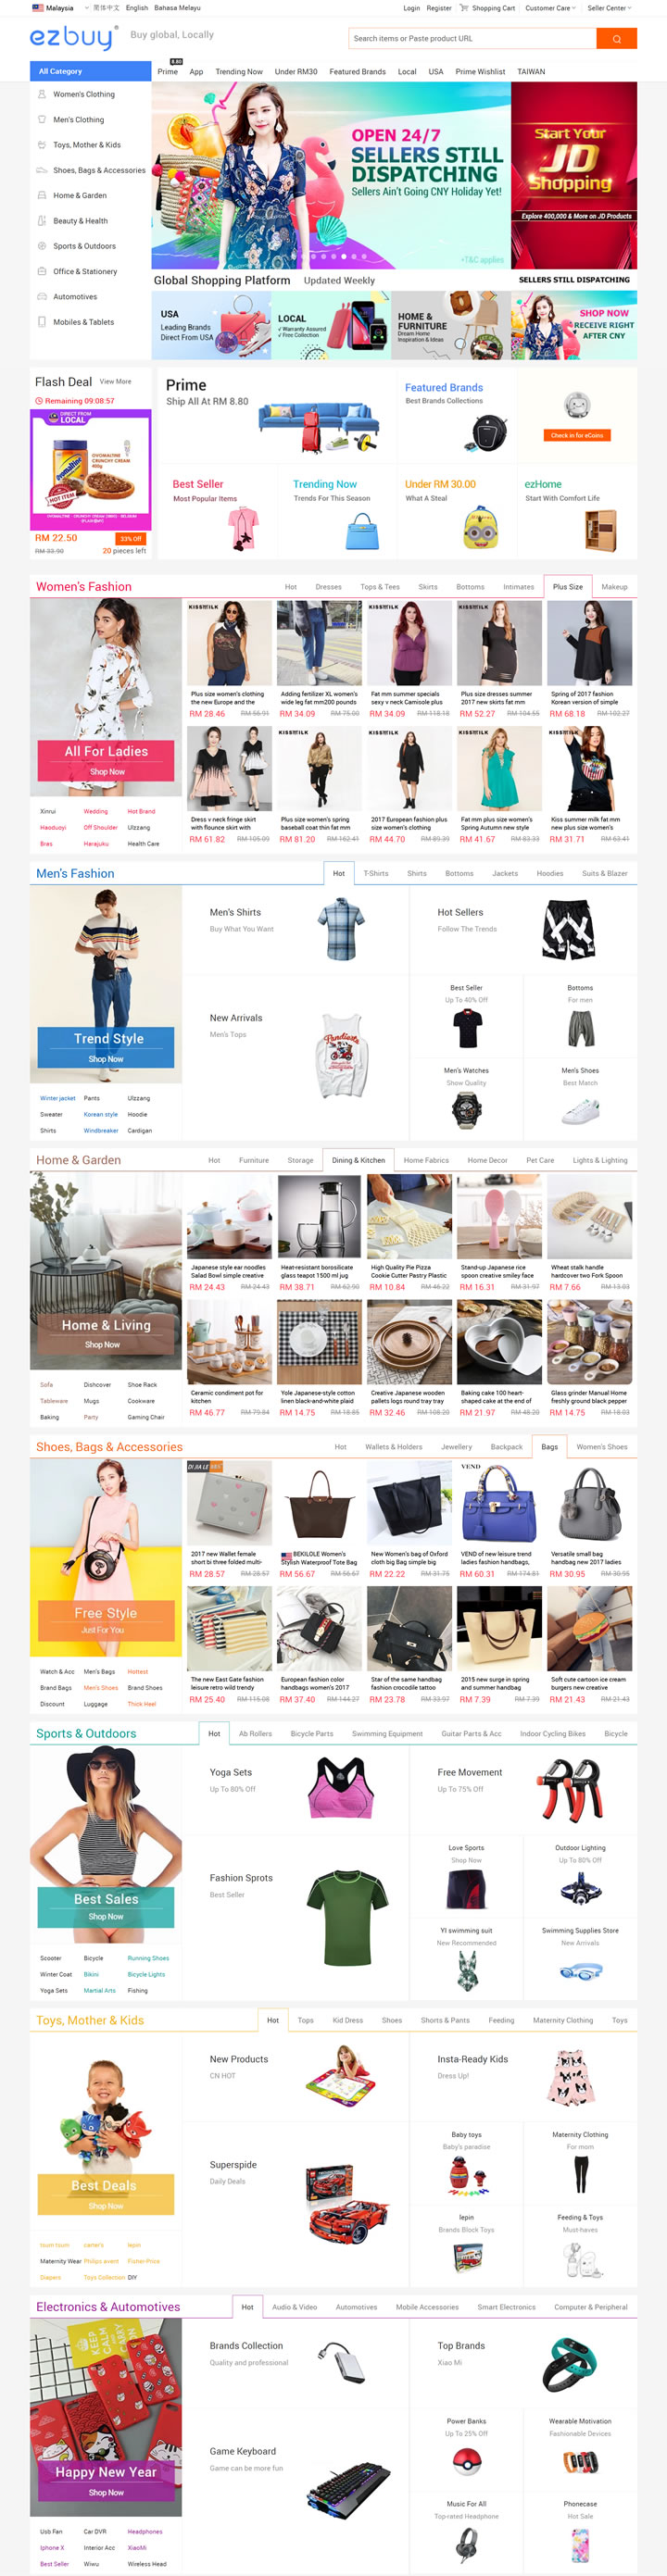 马来西亚网上购物平台：ezbuy